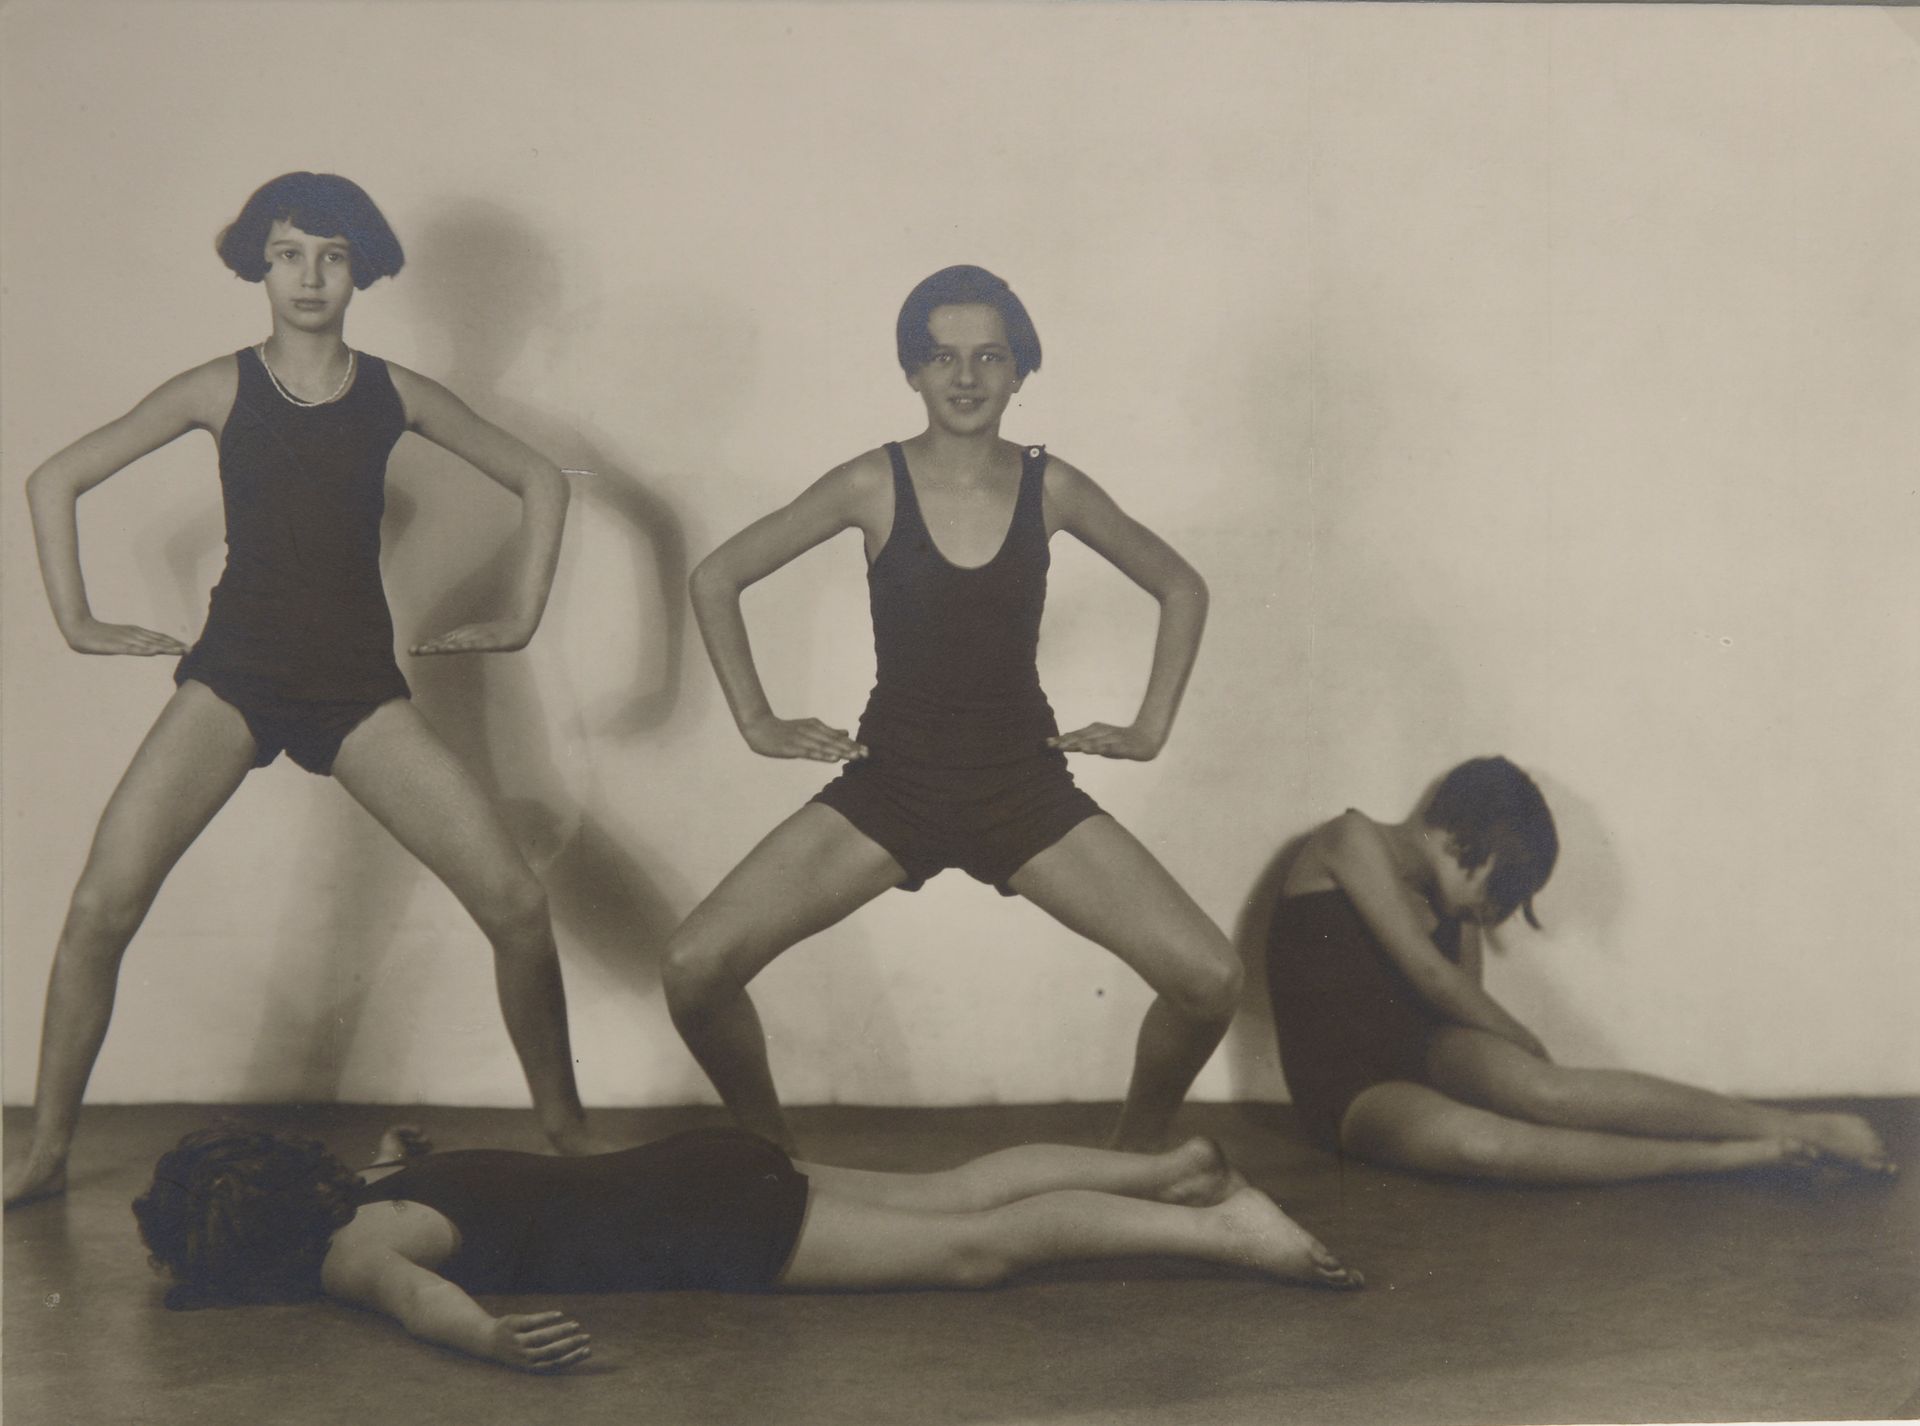 Null 弗朗蒂塞克-德蒂科尔(1883-1961)

舞蹈学校（第三版），约1930年。

复古的银色印刷品。

16.4 x 22 cm